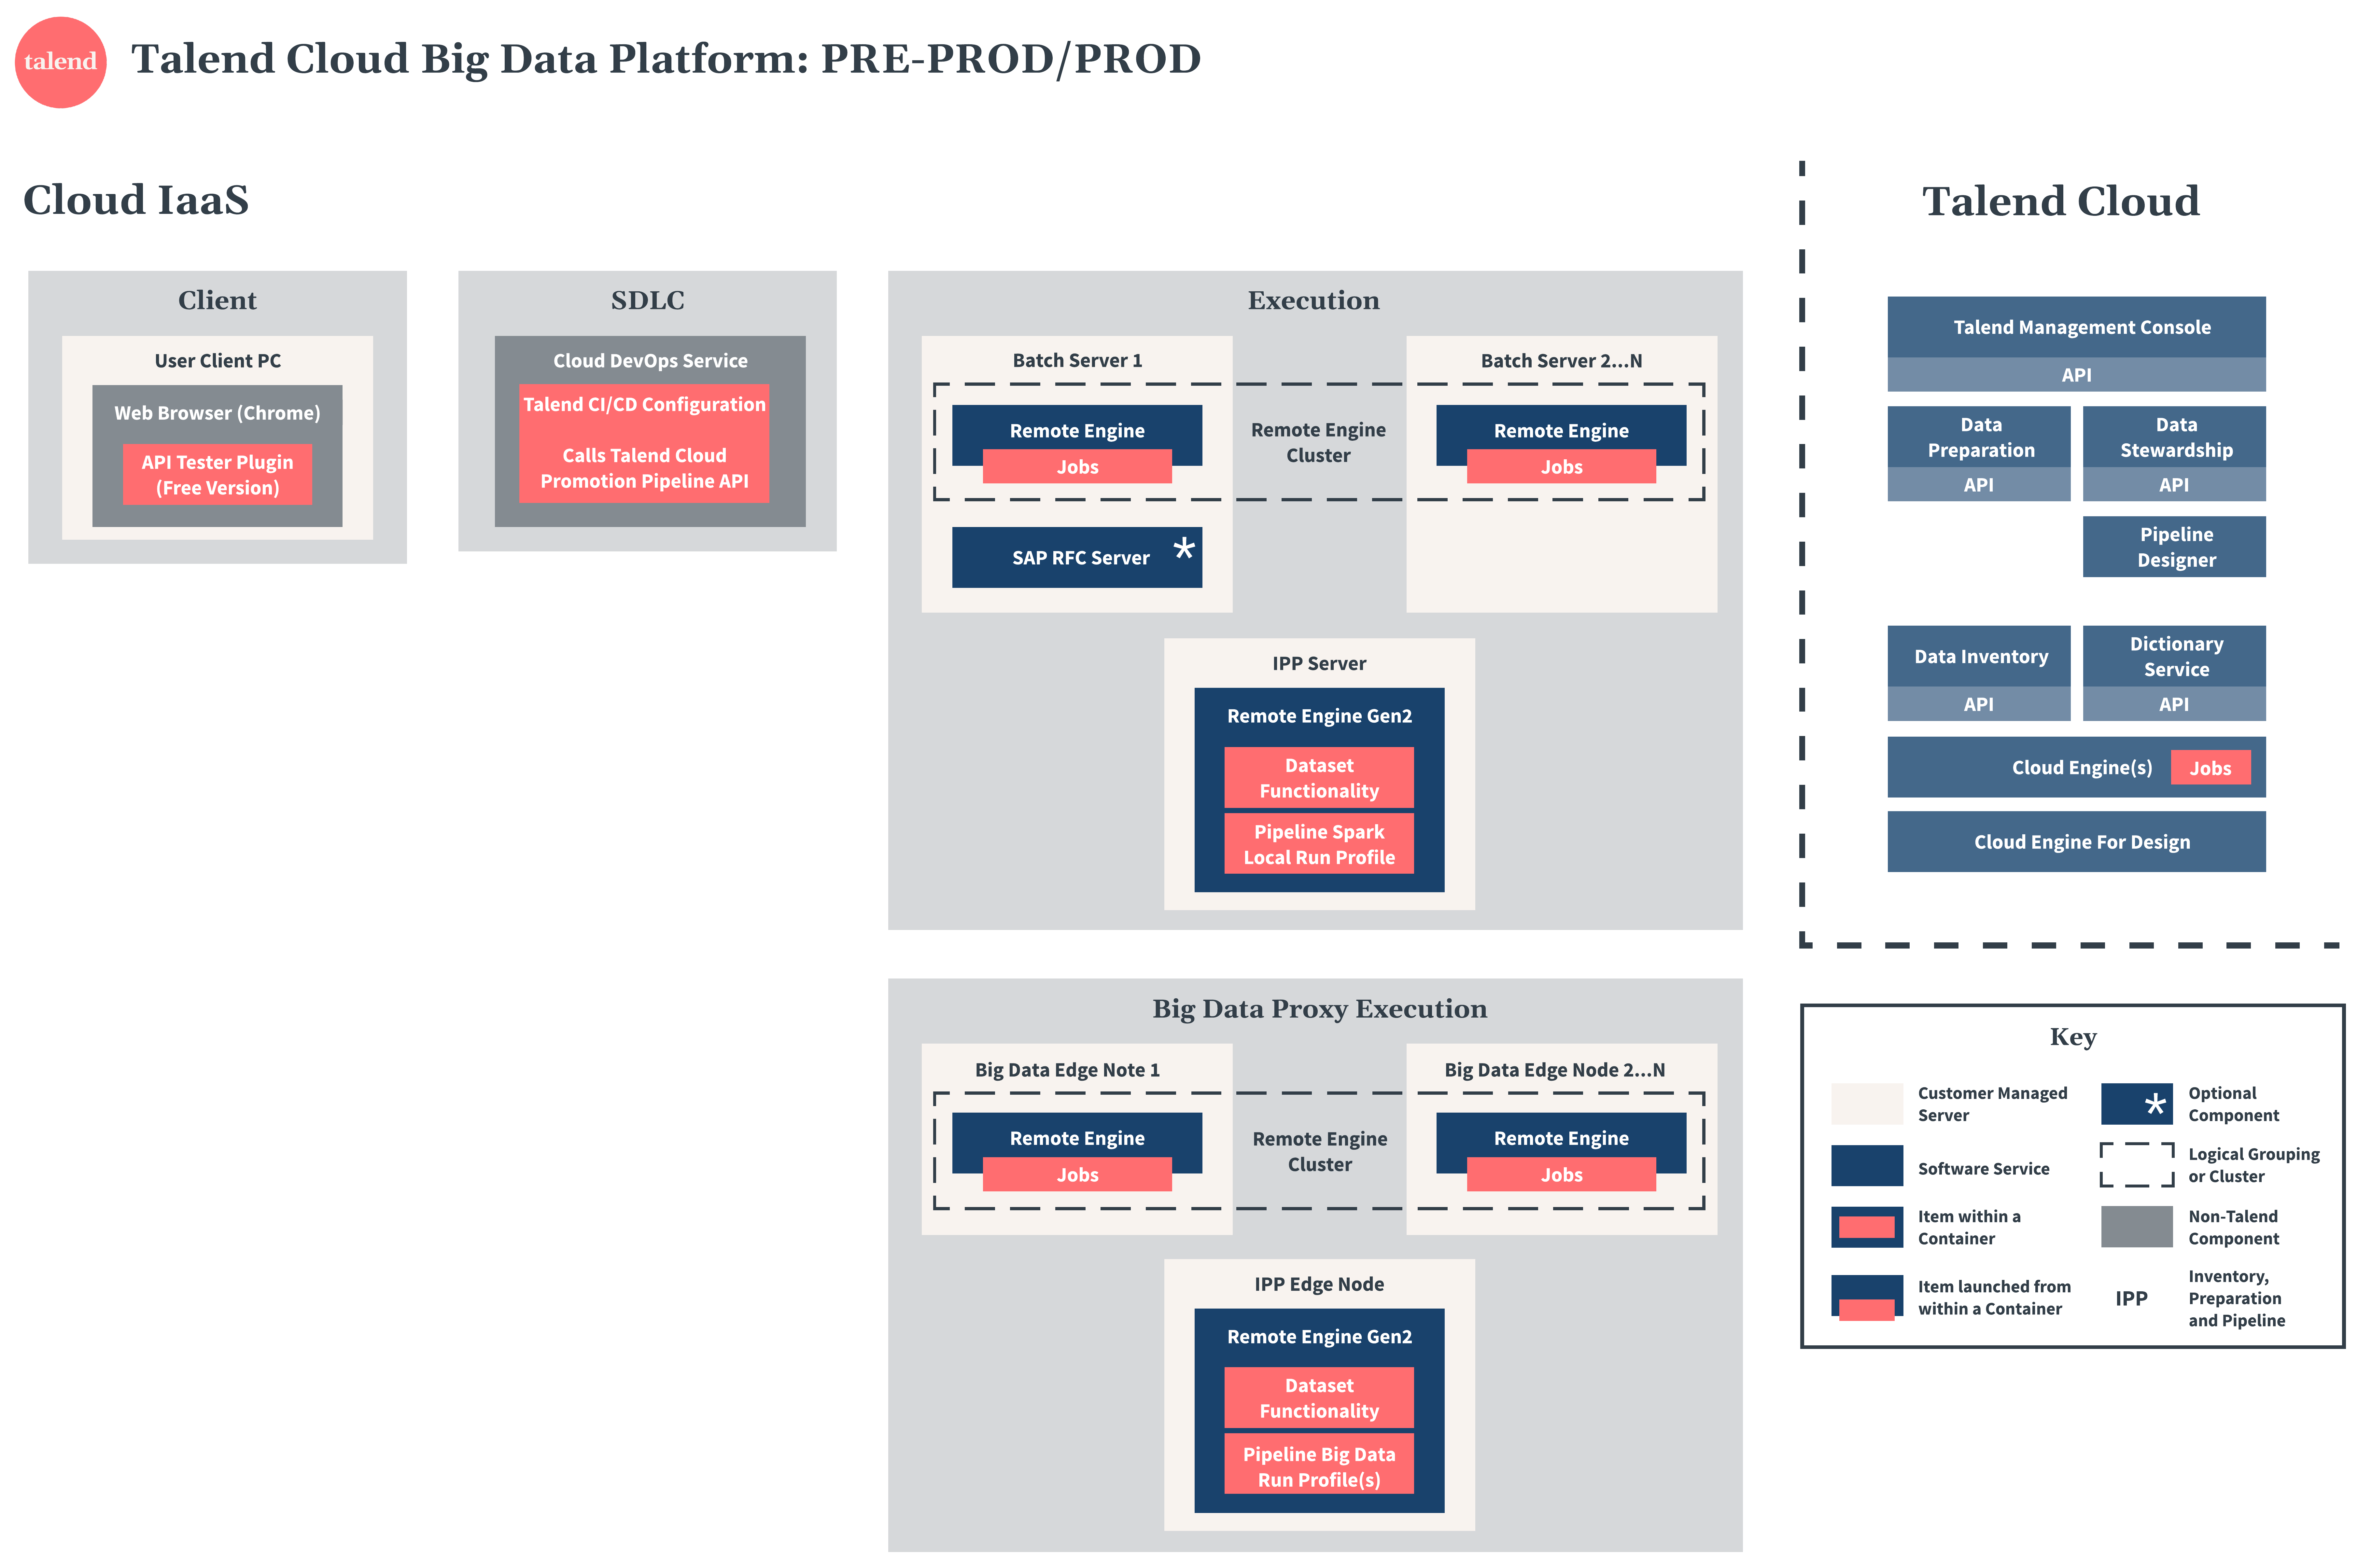 Talend Cloud Big Data Platform pre-production and production diagram.